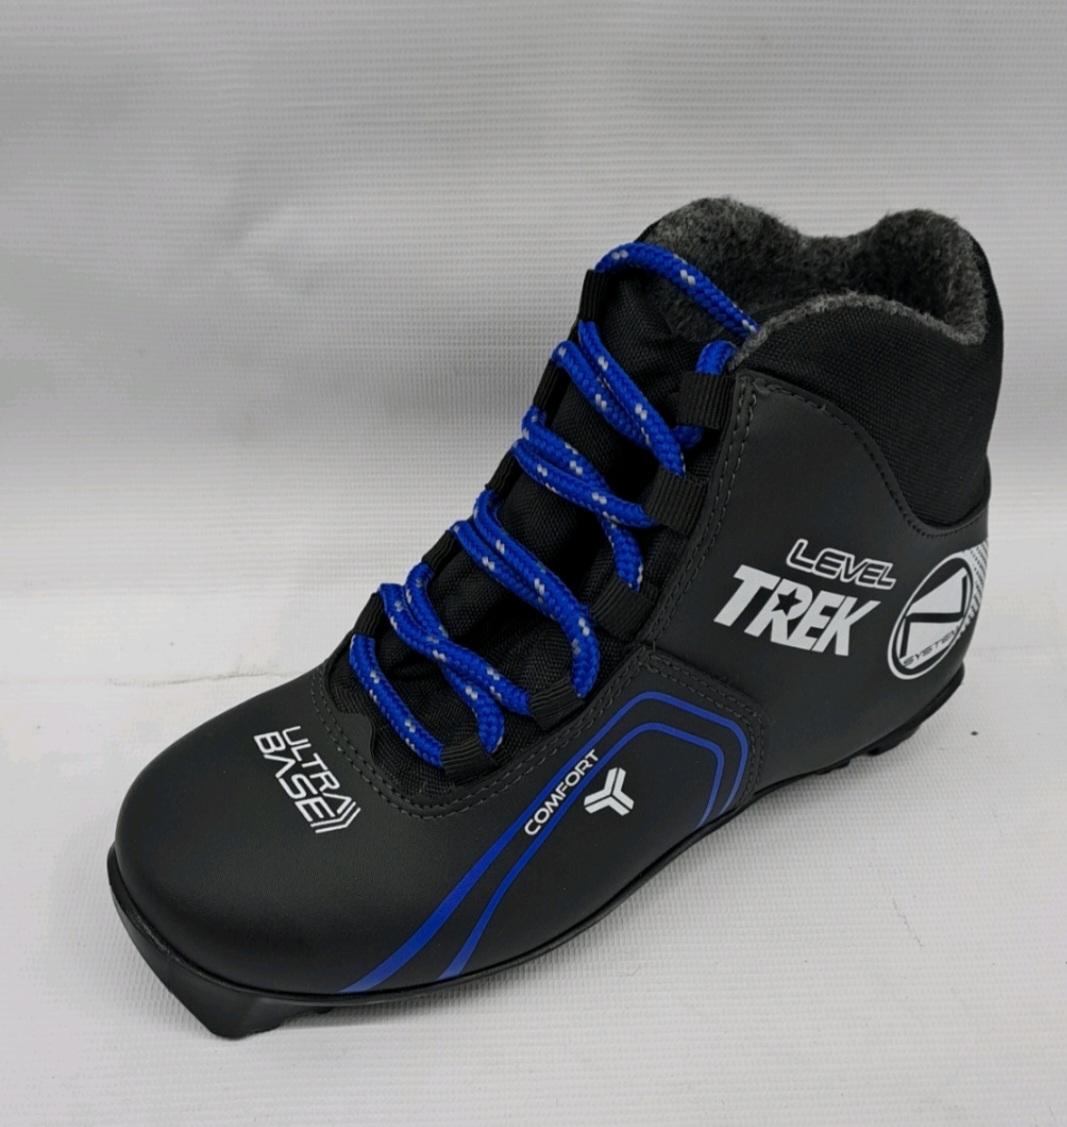 Ботинки лыжные TREK Level 3 черный лого синий RU37, EU38, CM23,5                                           